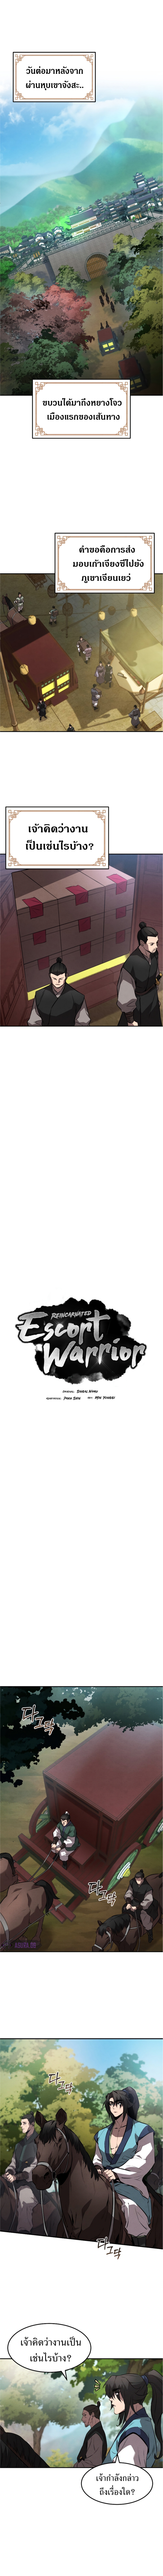 Reincarnated Escort Warrior 26 (2)